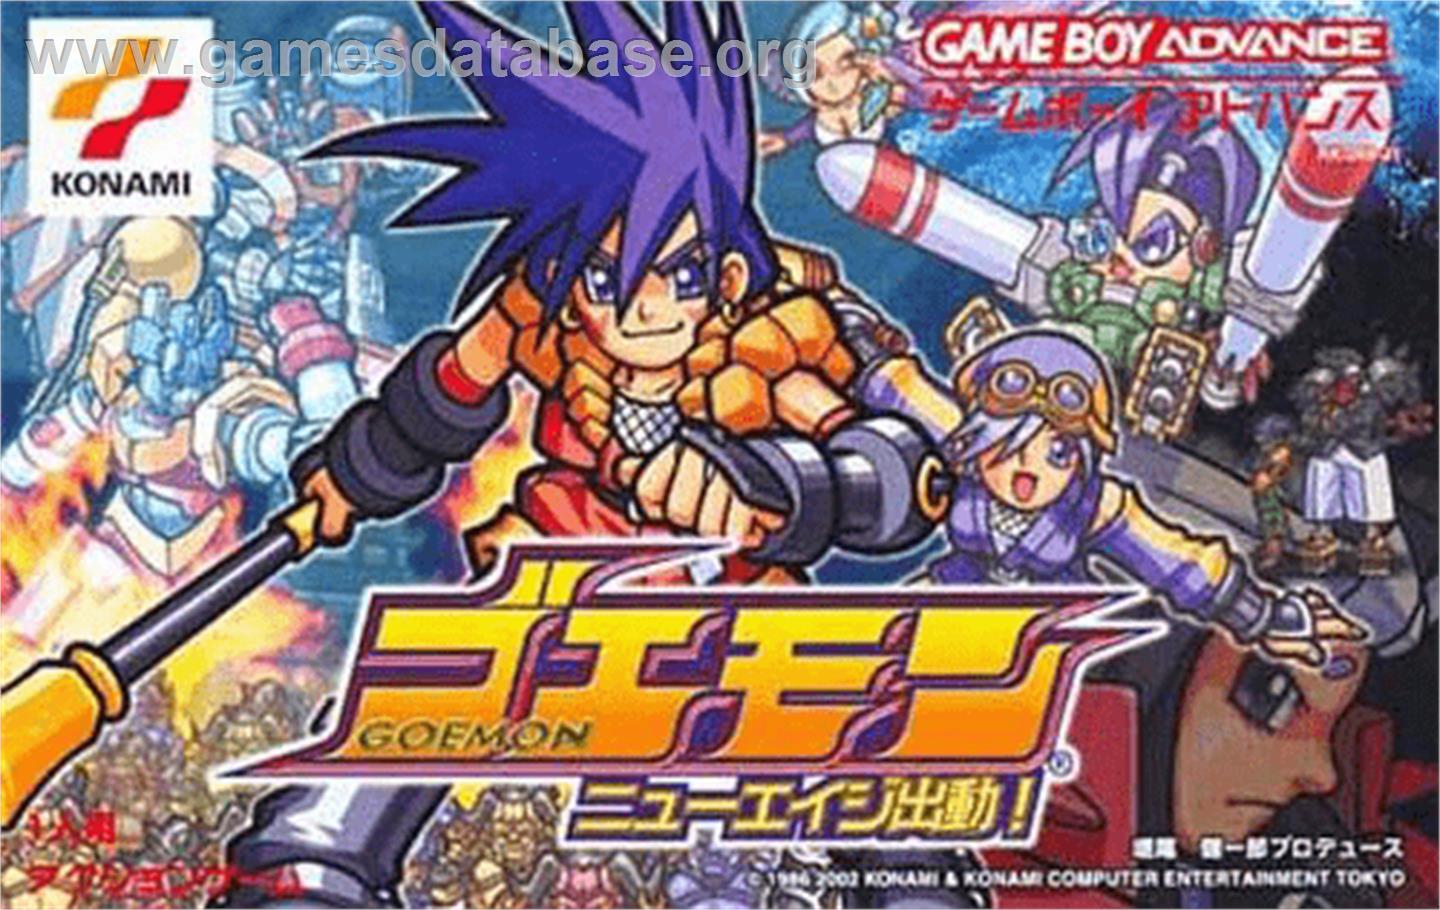 Goemon: New Age Shutsudou - Nintendo Game Boy Advance - Artwork - Box